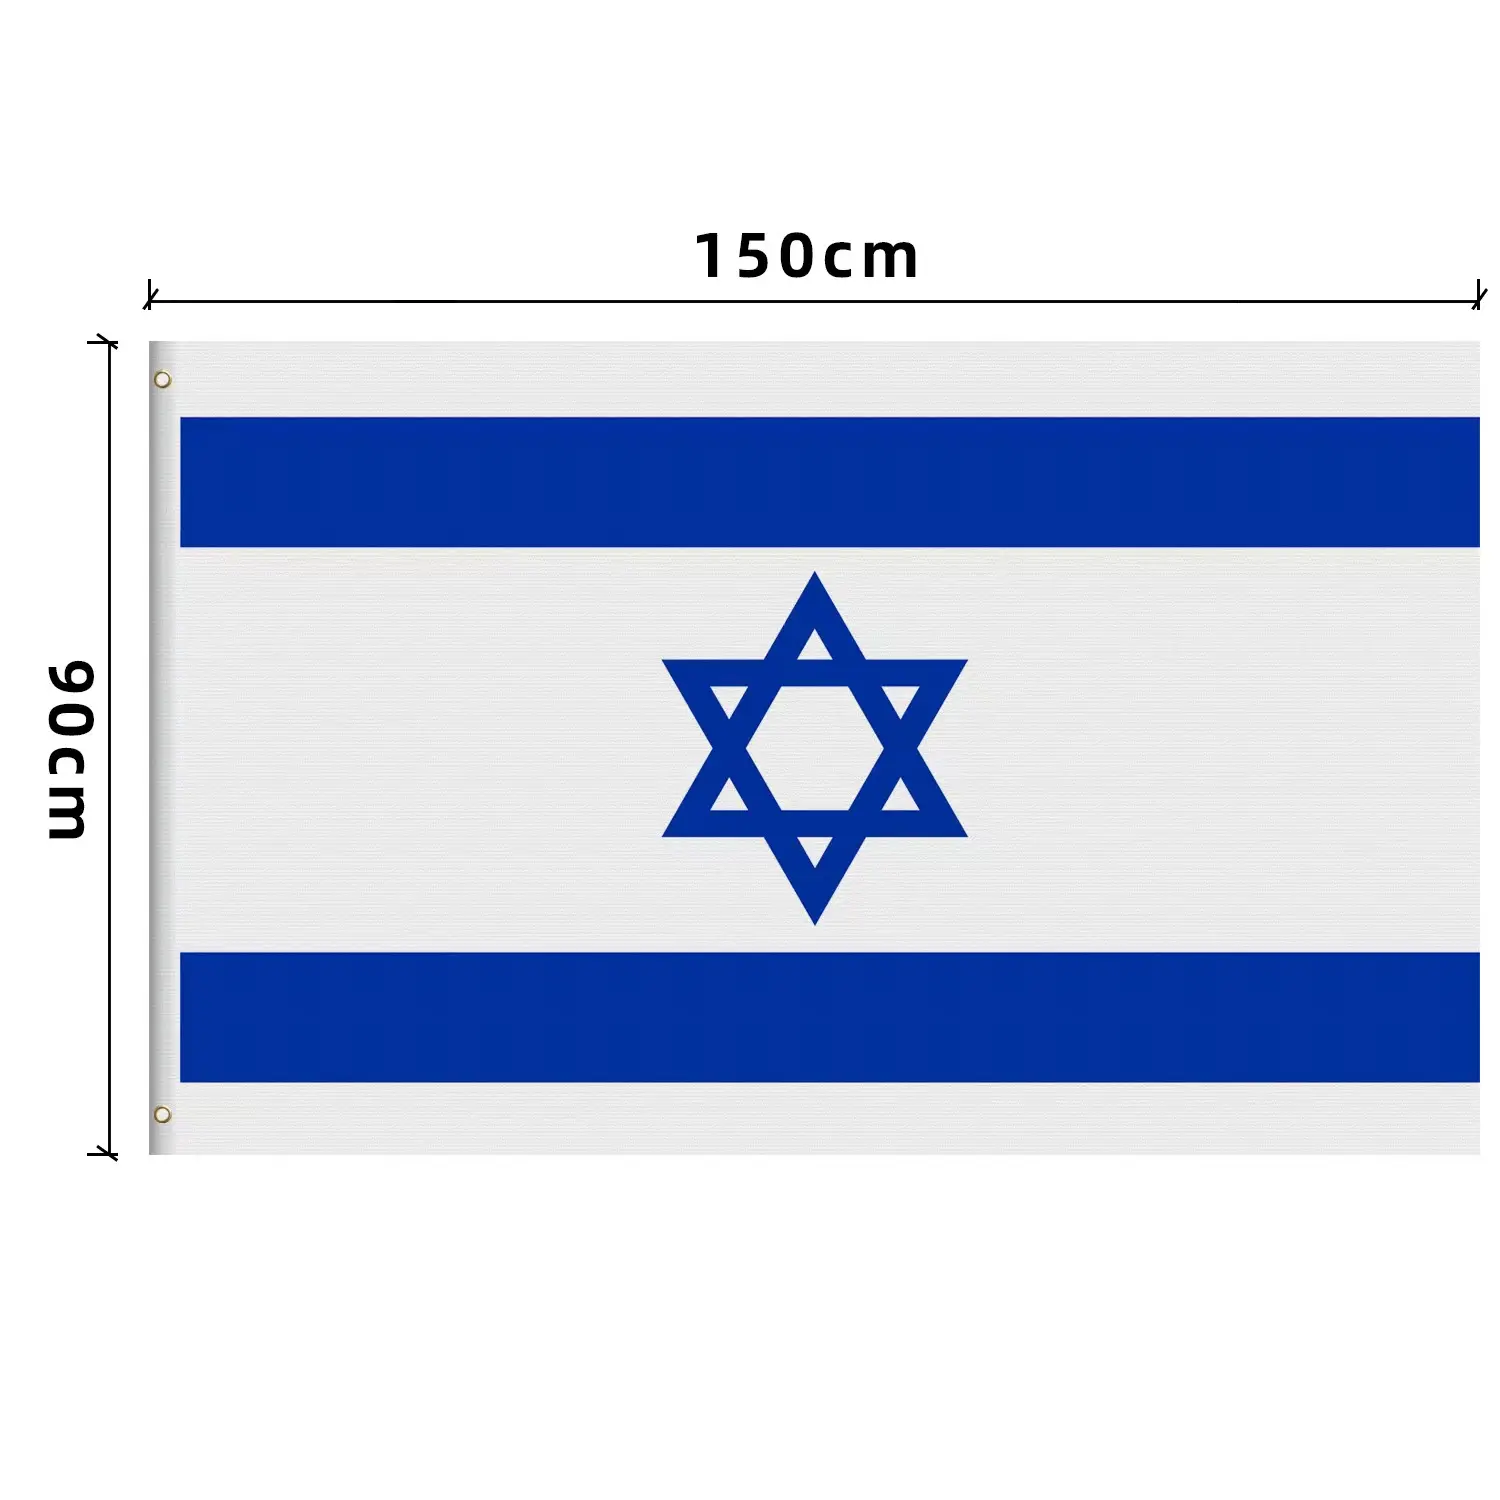 Israel quốc kỳ cầm tay vẫy cờ với lỗ chân lông bằng nhựa